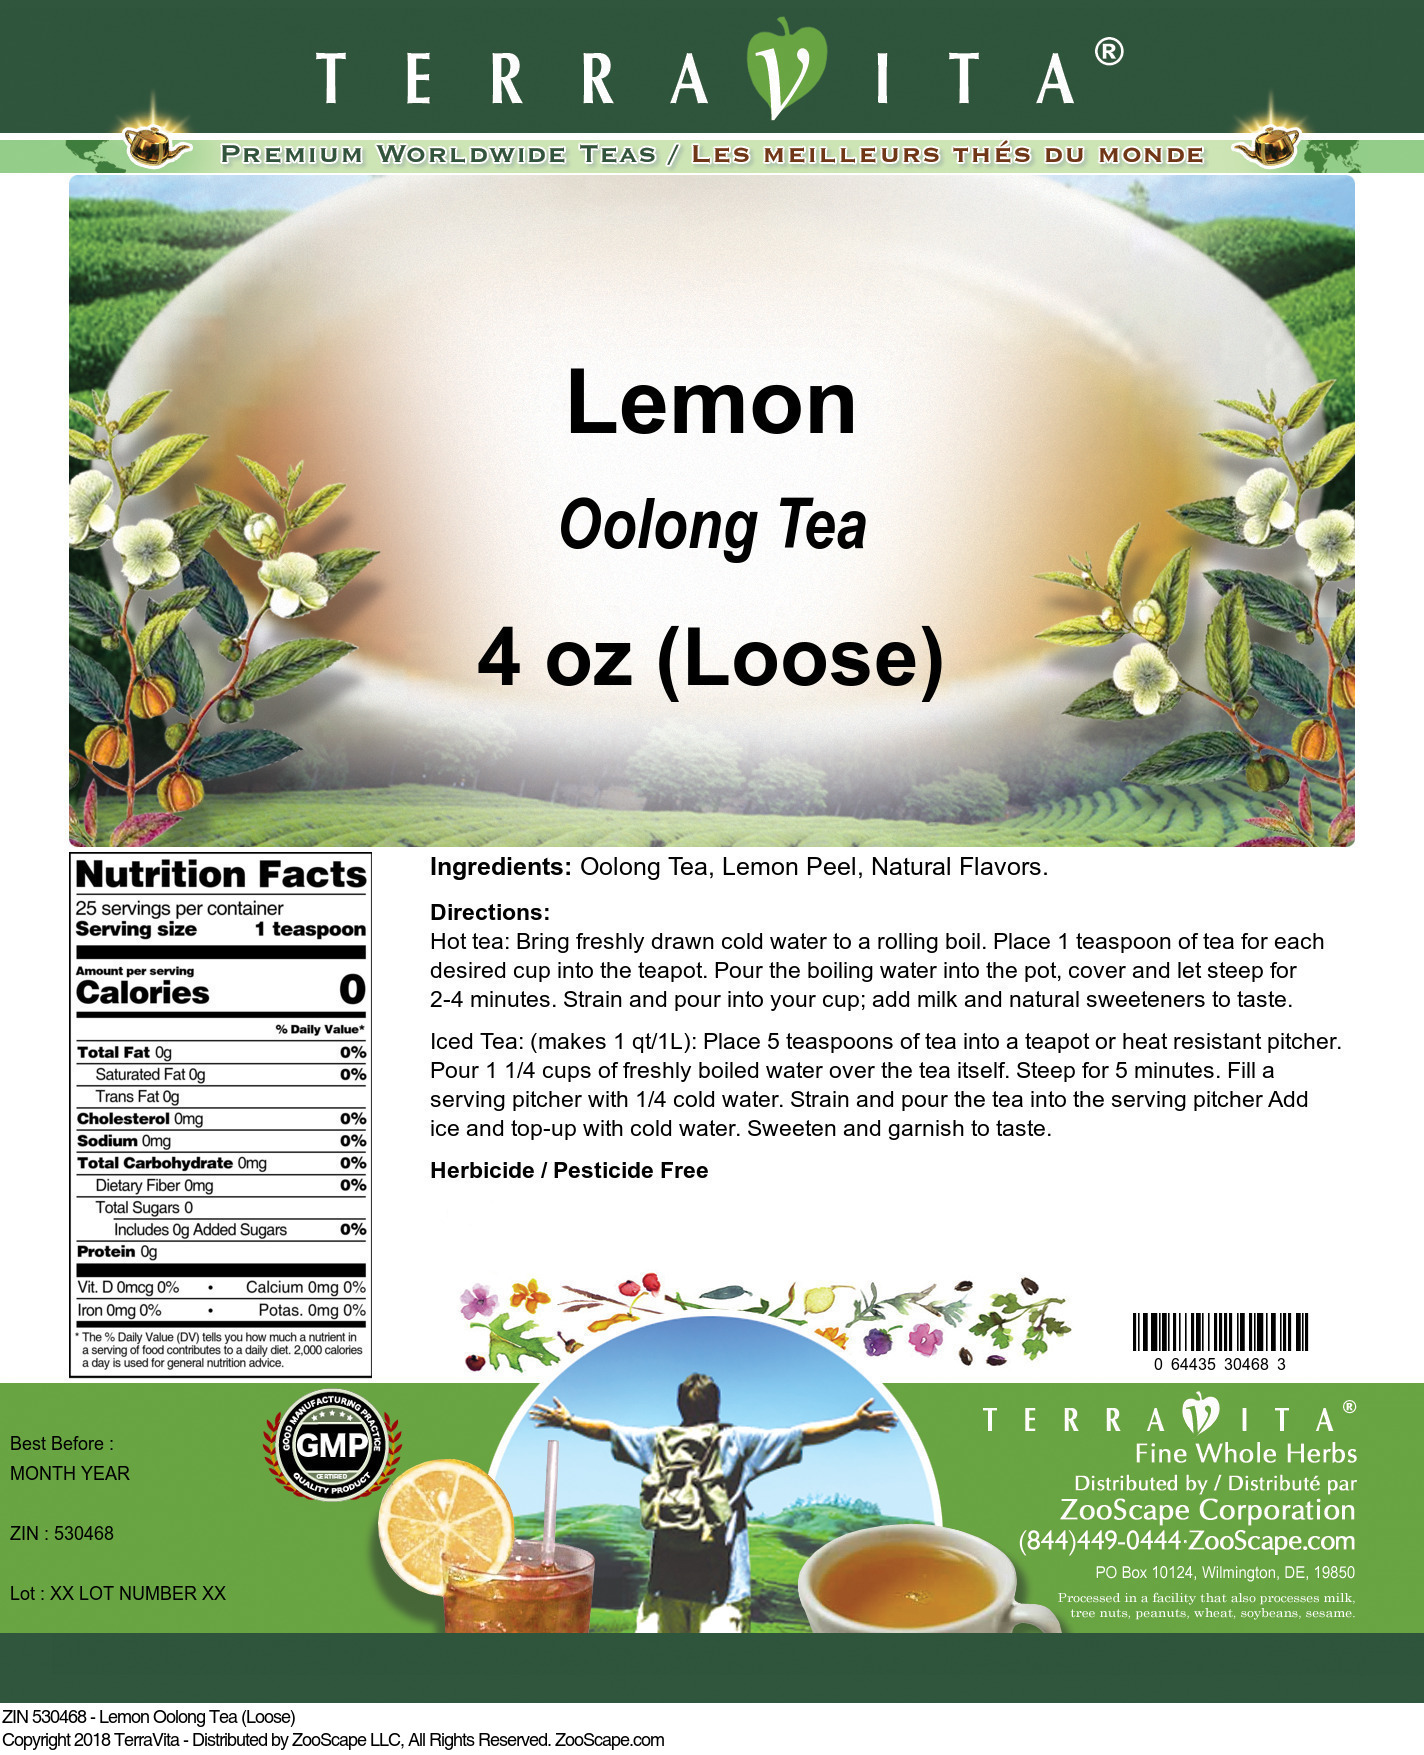 Lemon Oolong Tea (Loose) - Label